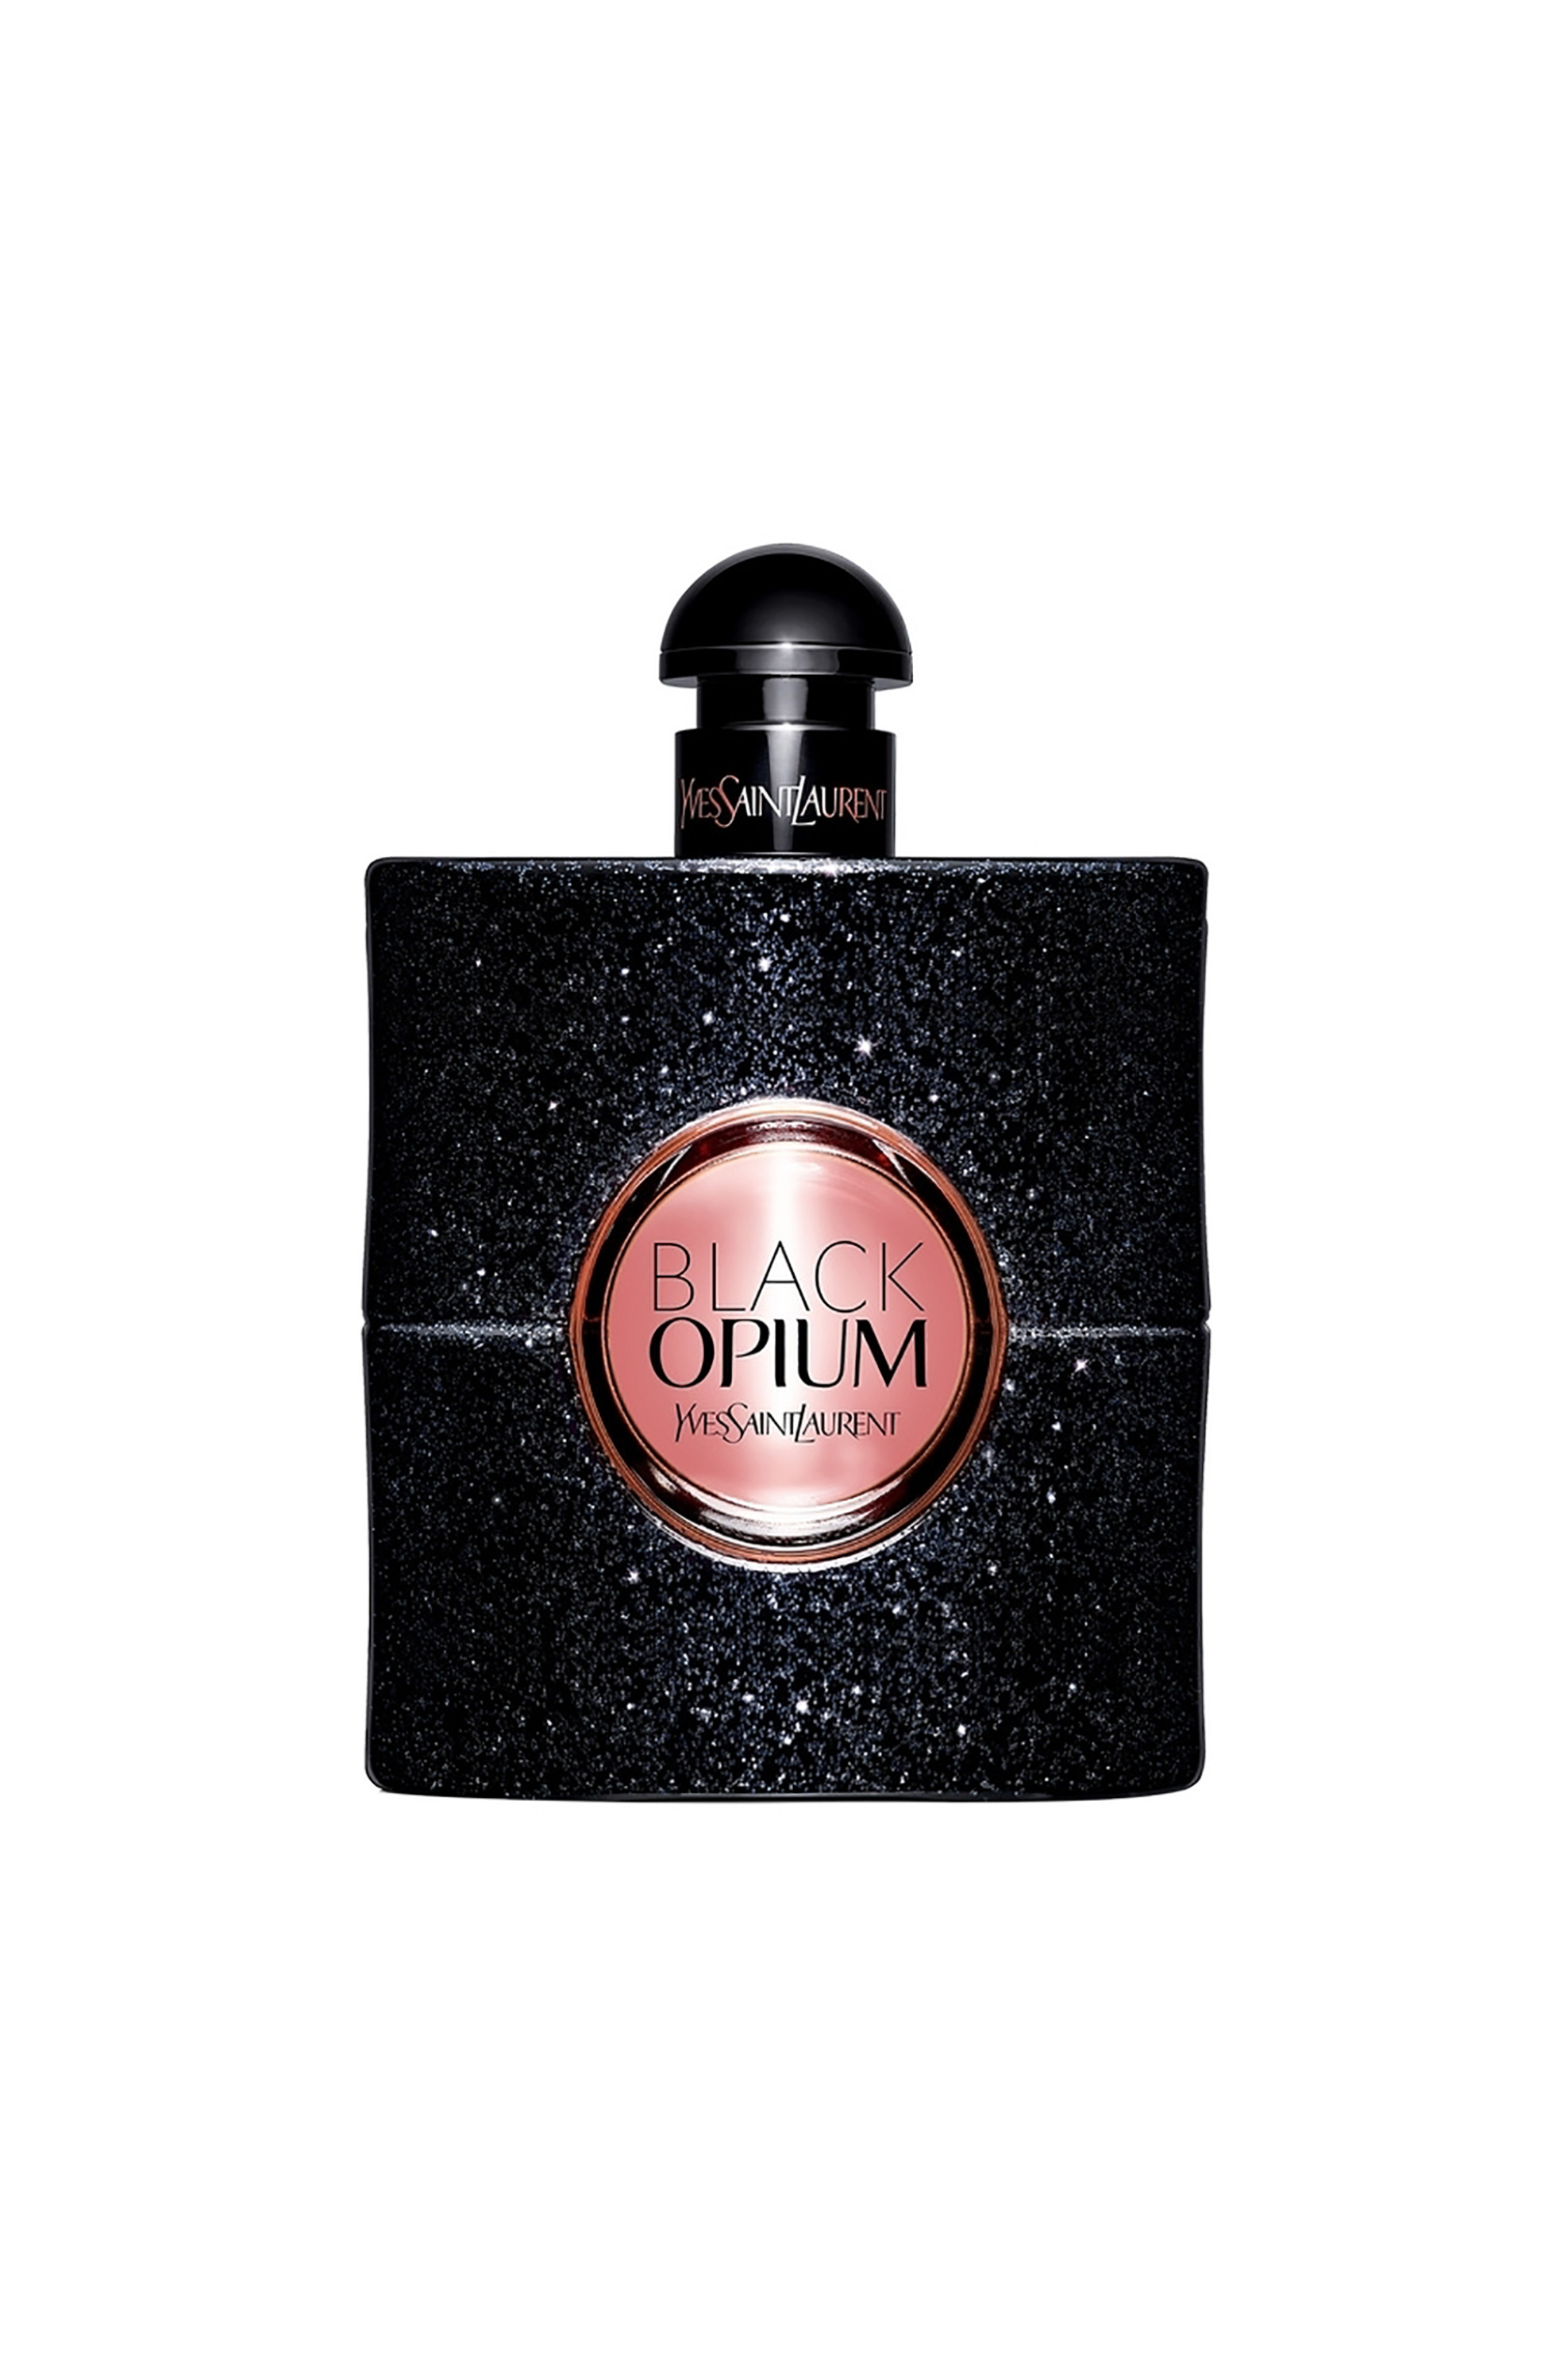 Ομορφιά > ΑΡΩΜΑΤΑ > Γυναικεία Αρώματα > Eau de Parfum - Parfum Yves Saint Laurent Black Opium Eau de Parfum - 3365440787971